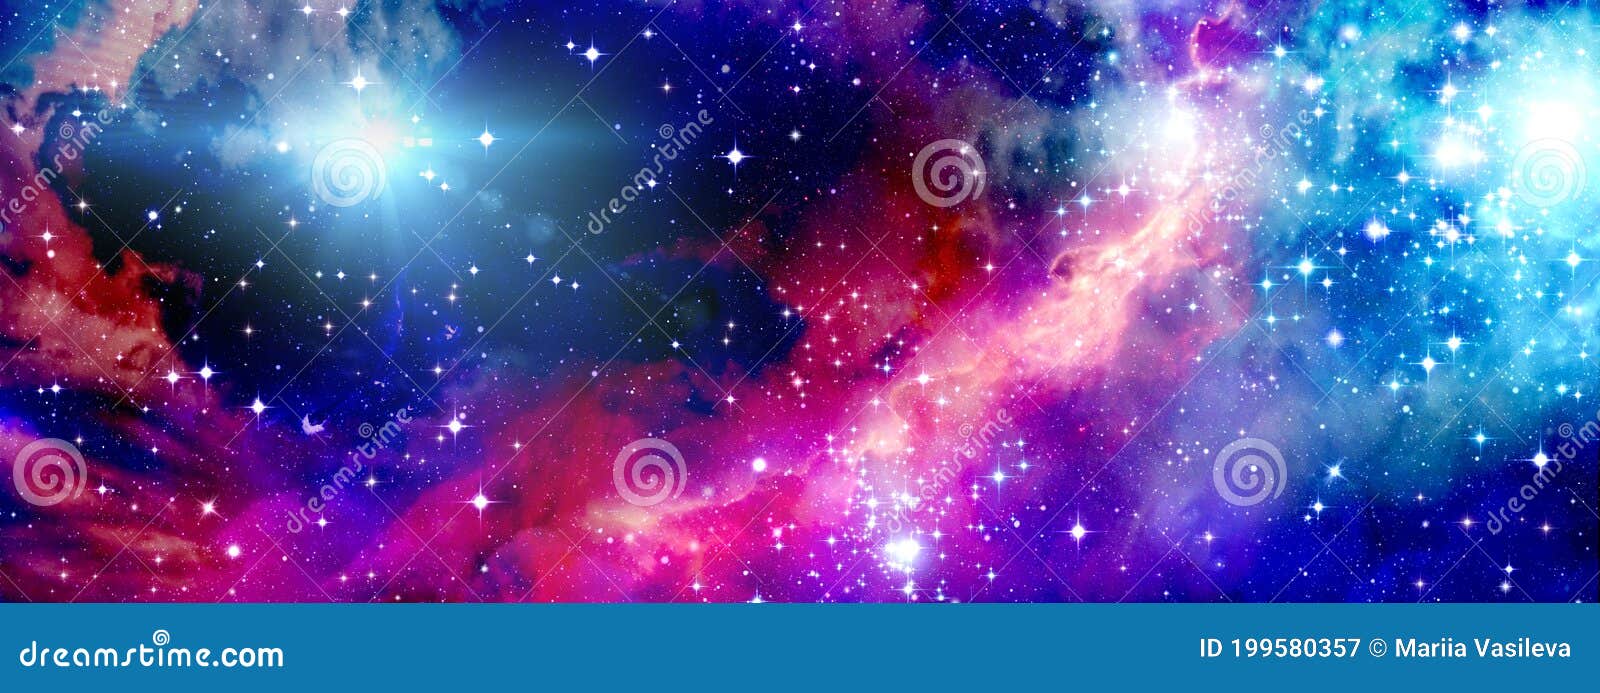 有恒星 宇宙星云和明星光的明亮宇宙背景库存例证 插画包括有焕发 空间 波斯菊 设计 星系